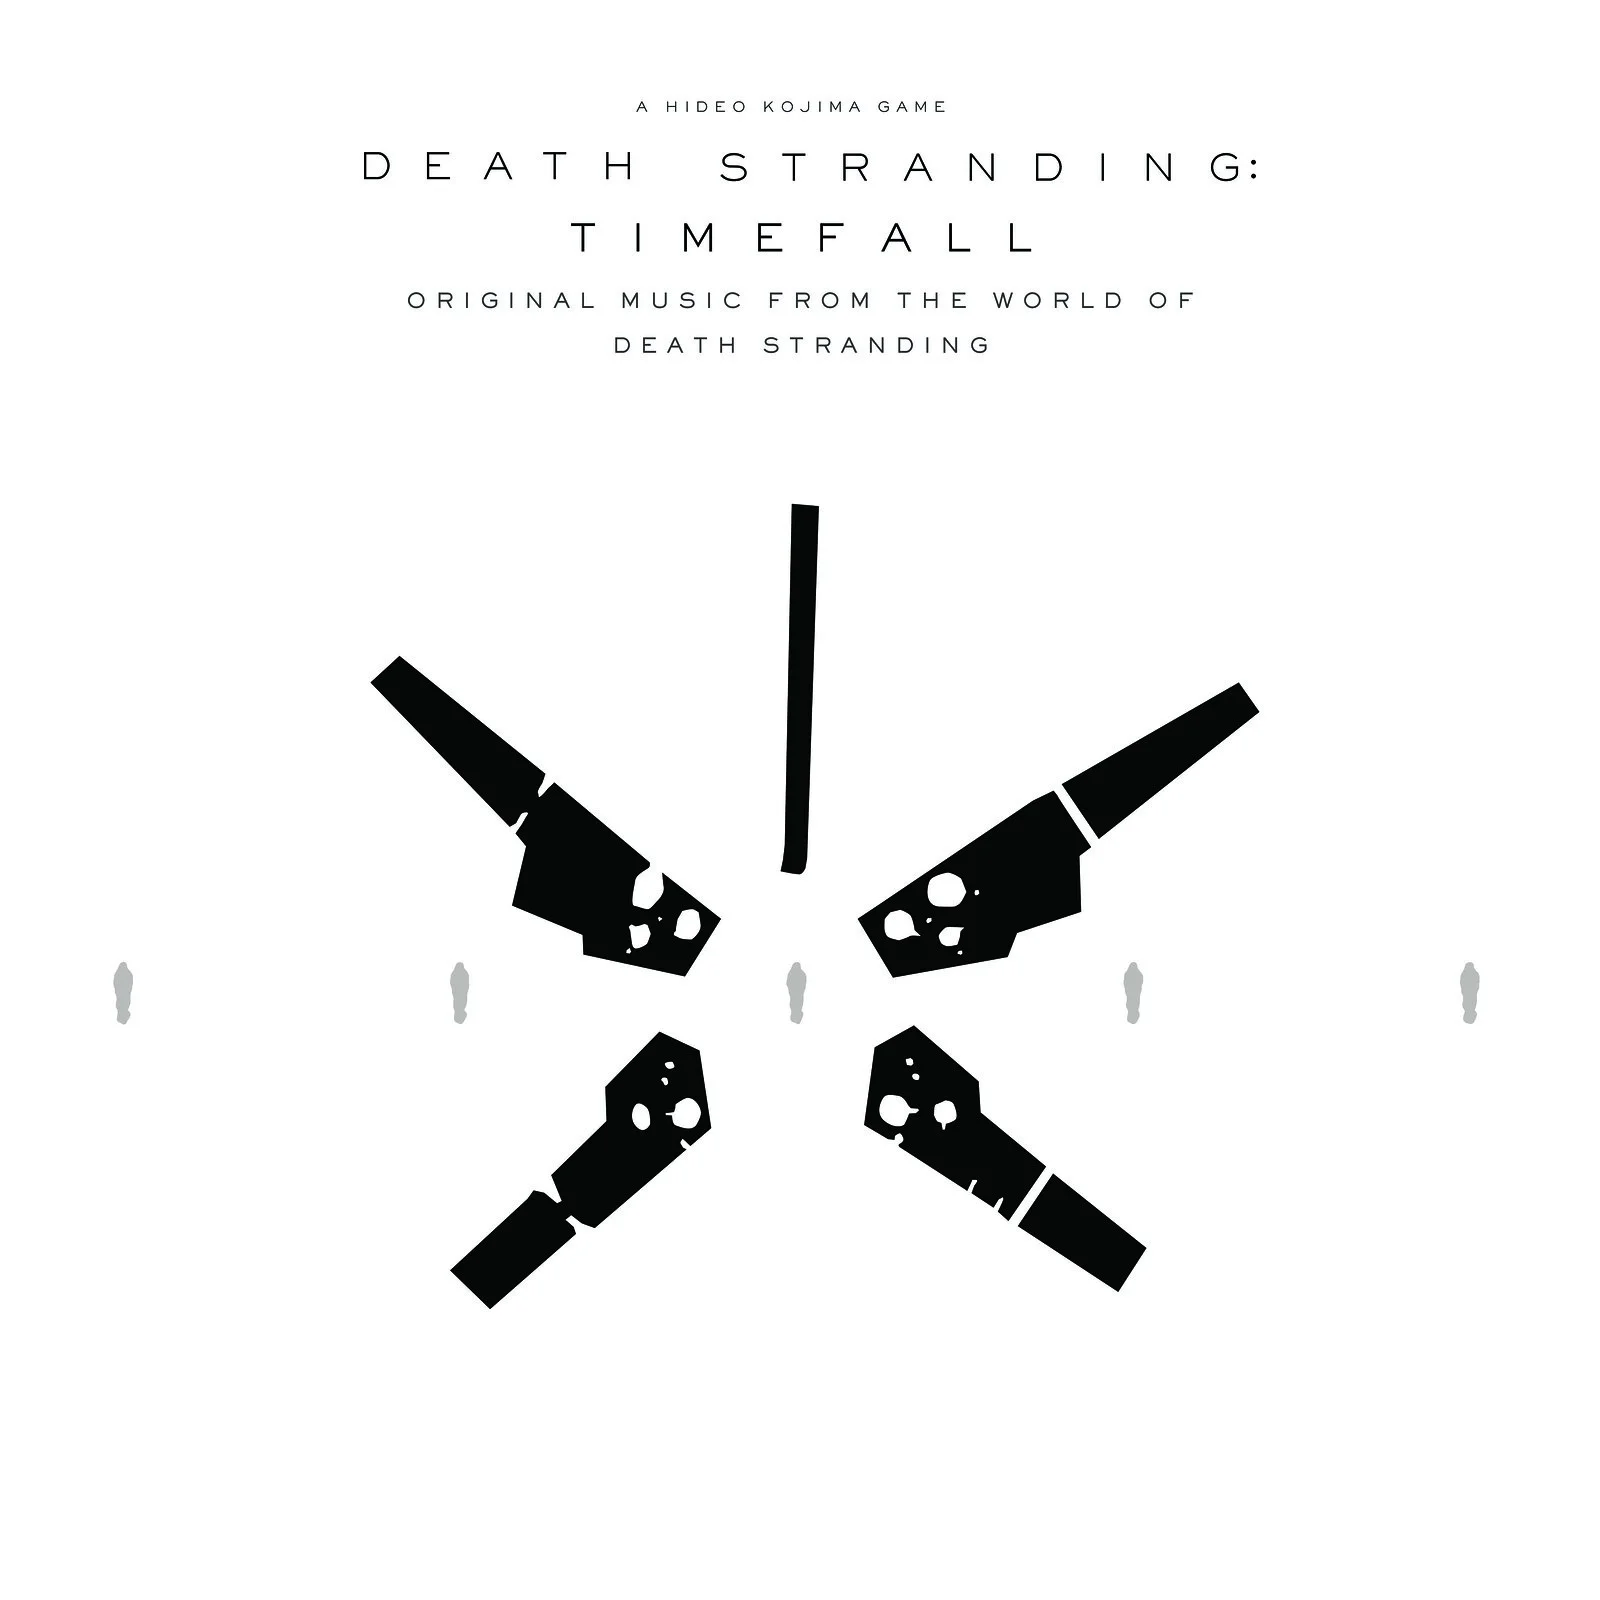 CHVRCHES выпустила песню по Death Stranding — она войдёт в альбом Timefall - фото 1